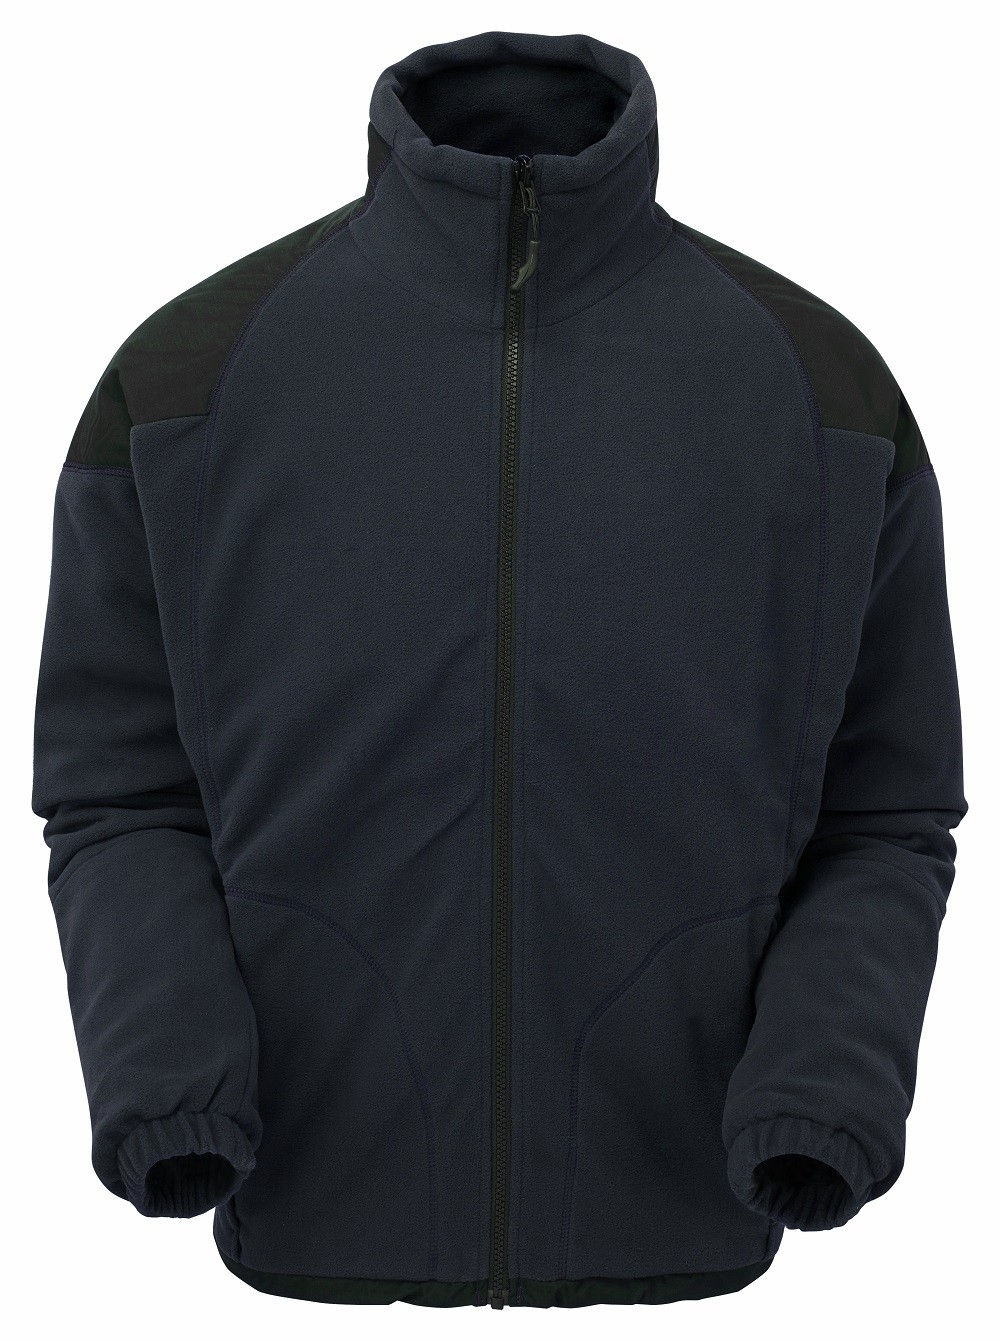 keela genesis waterproof travel fleece jacket